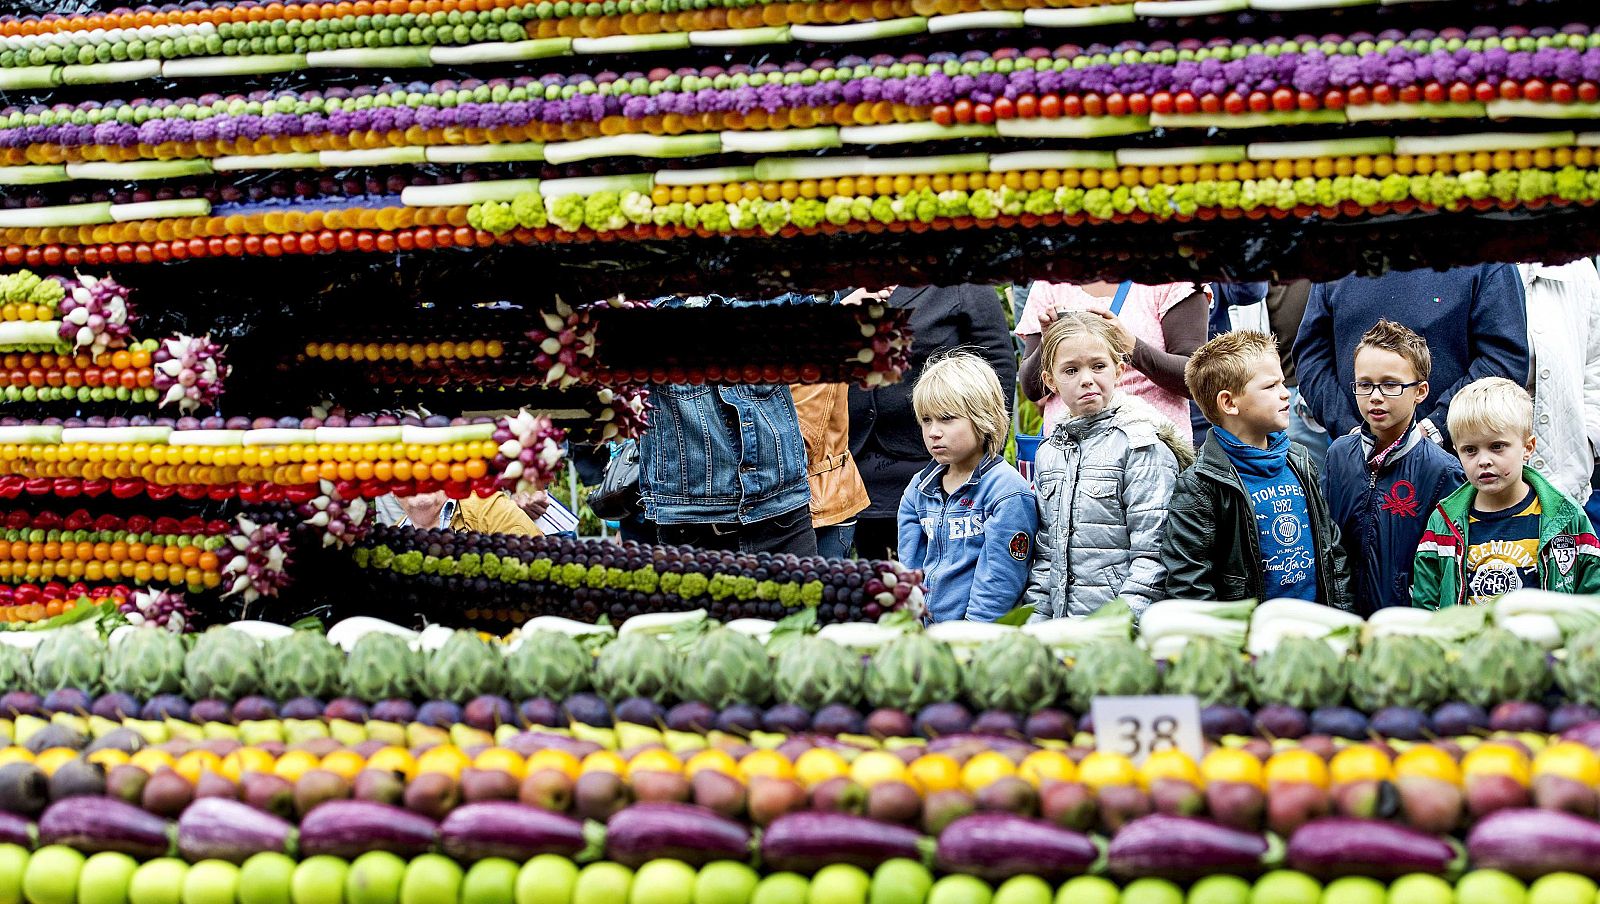 Un mercado de frutas y verduras en Holanda